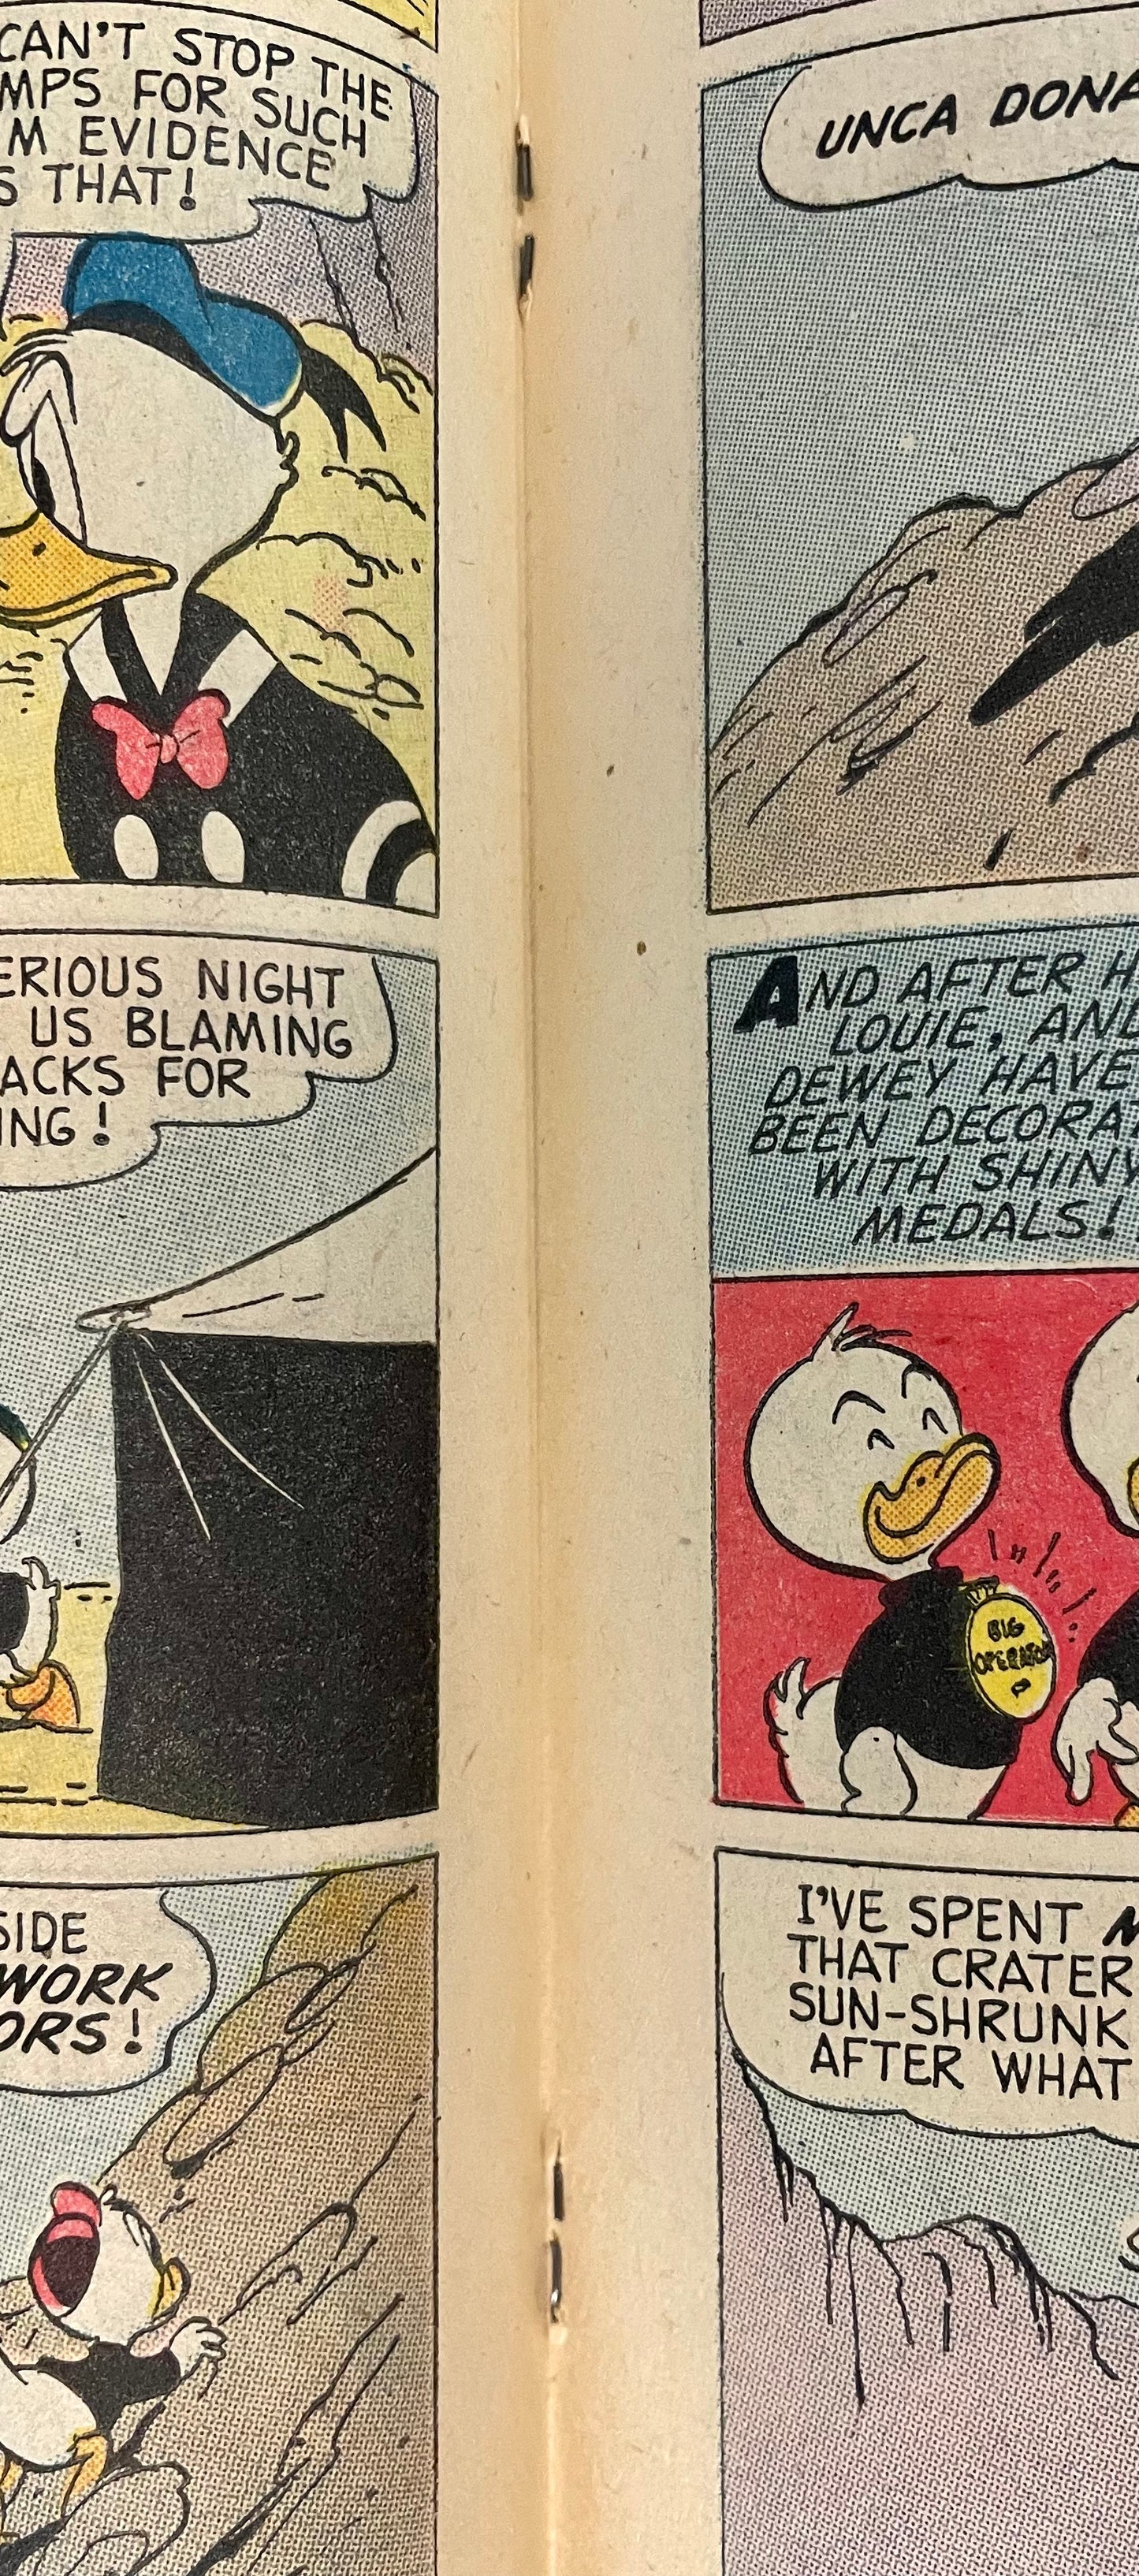 Dell Comics Walt Disney's Uncle Scrooge No. 30